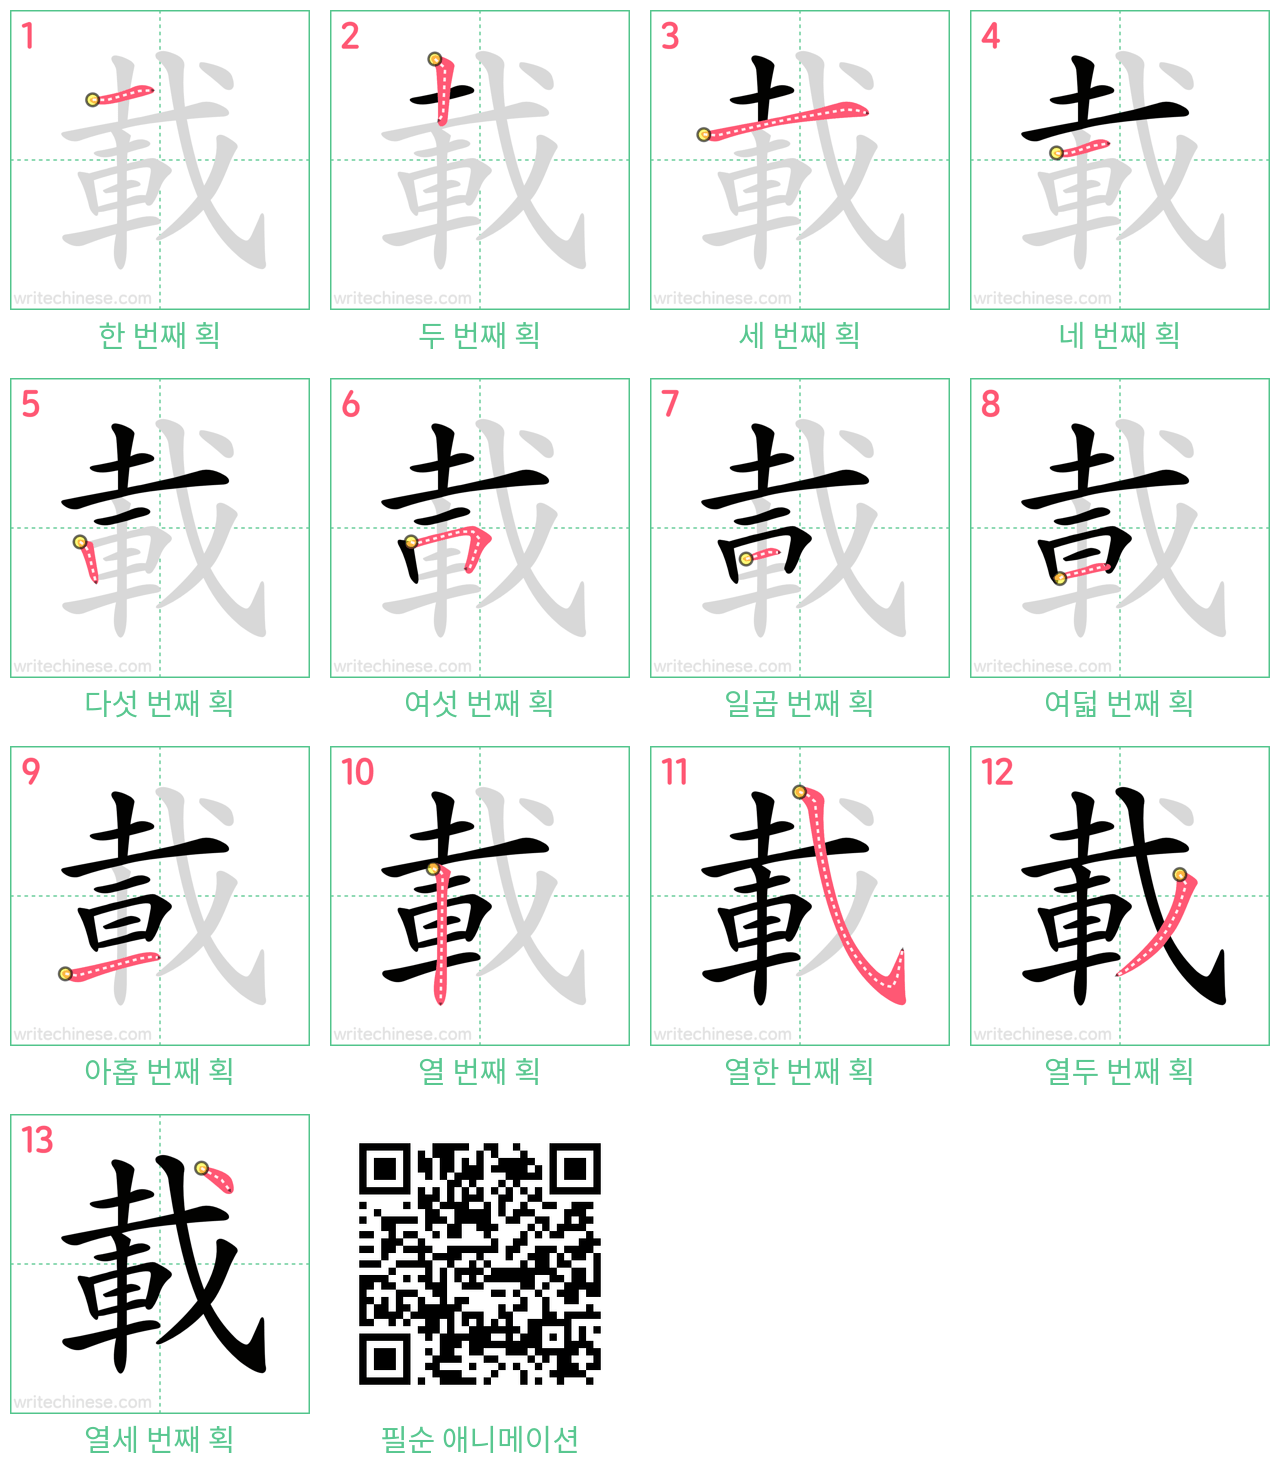 載 step-by-step stroke order diagrams